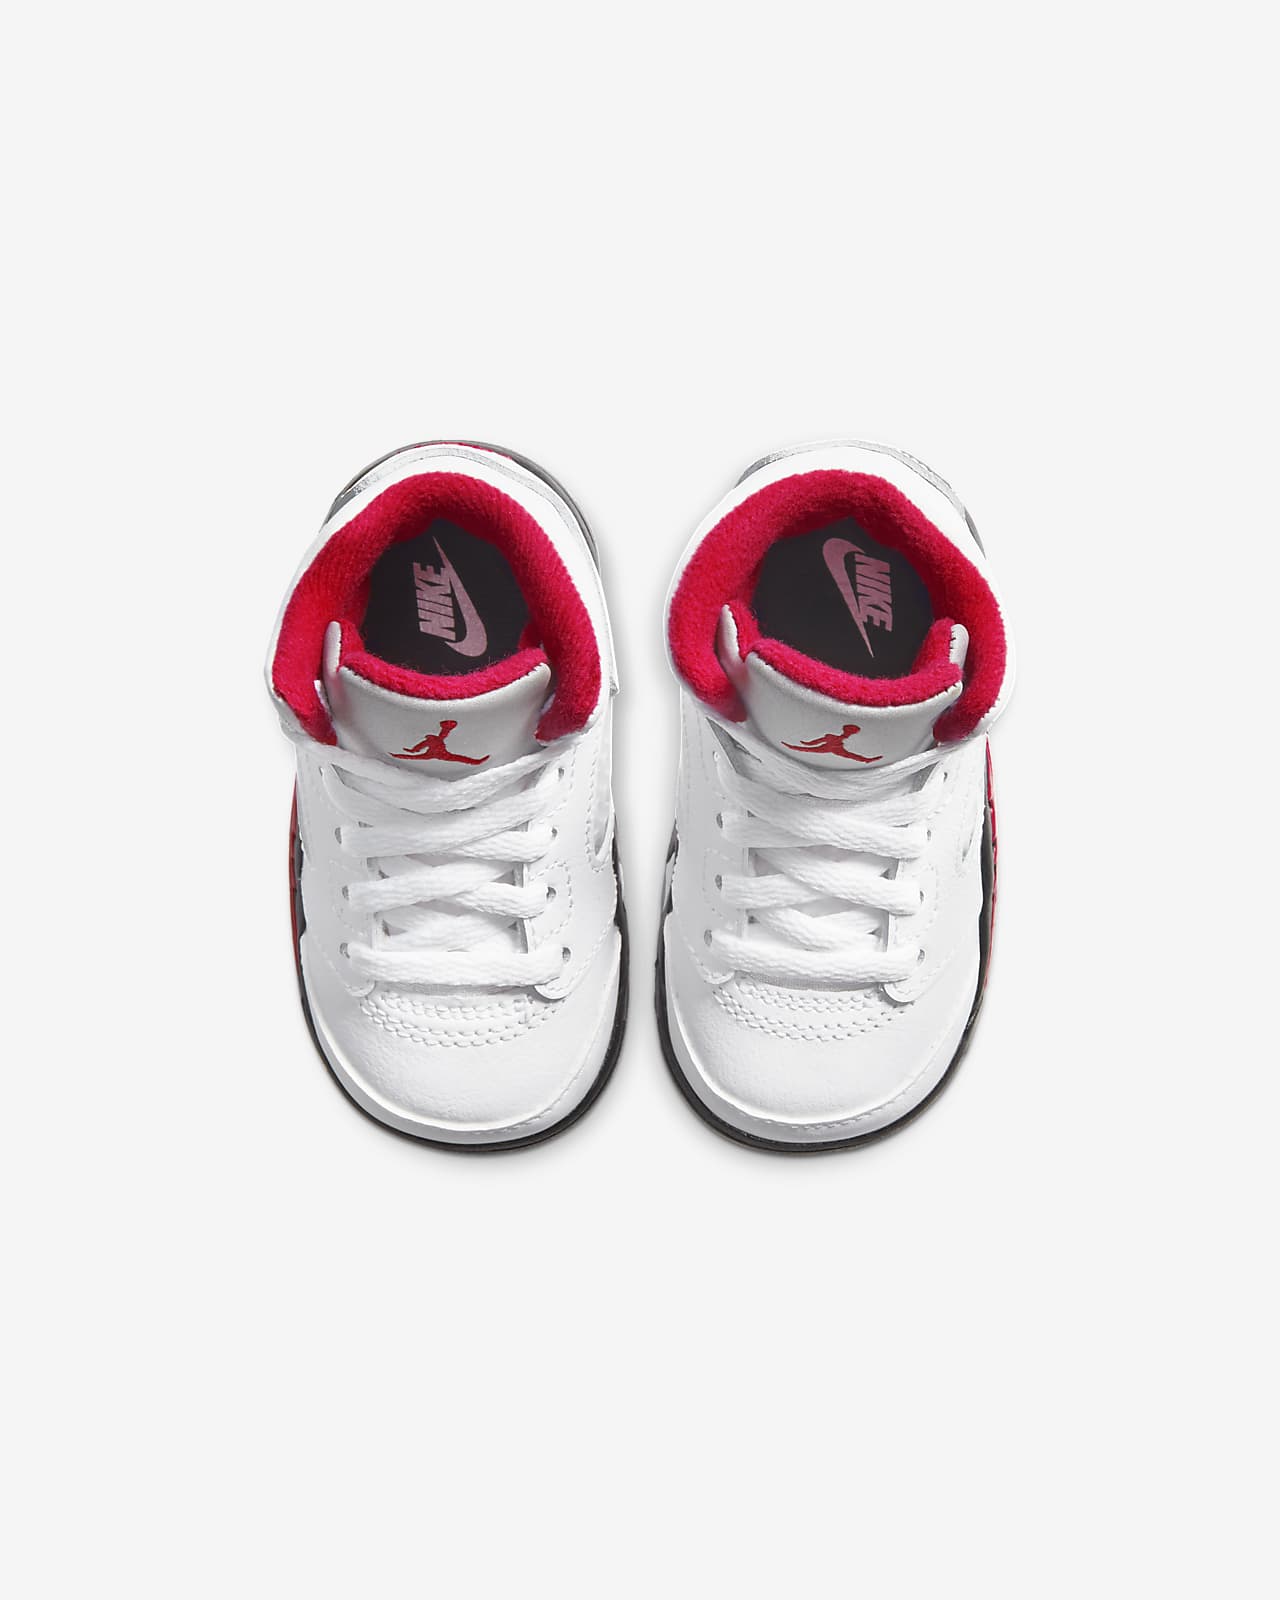 Jordan 5 Retro Baby and Toddler Shoe 